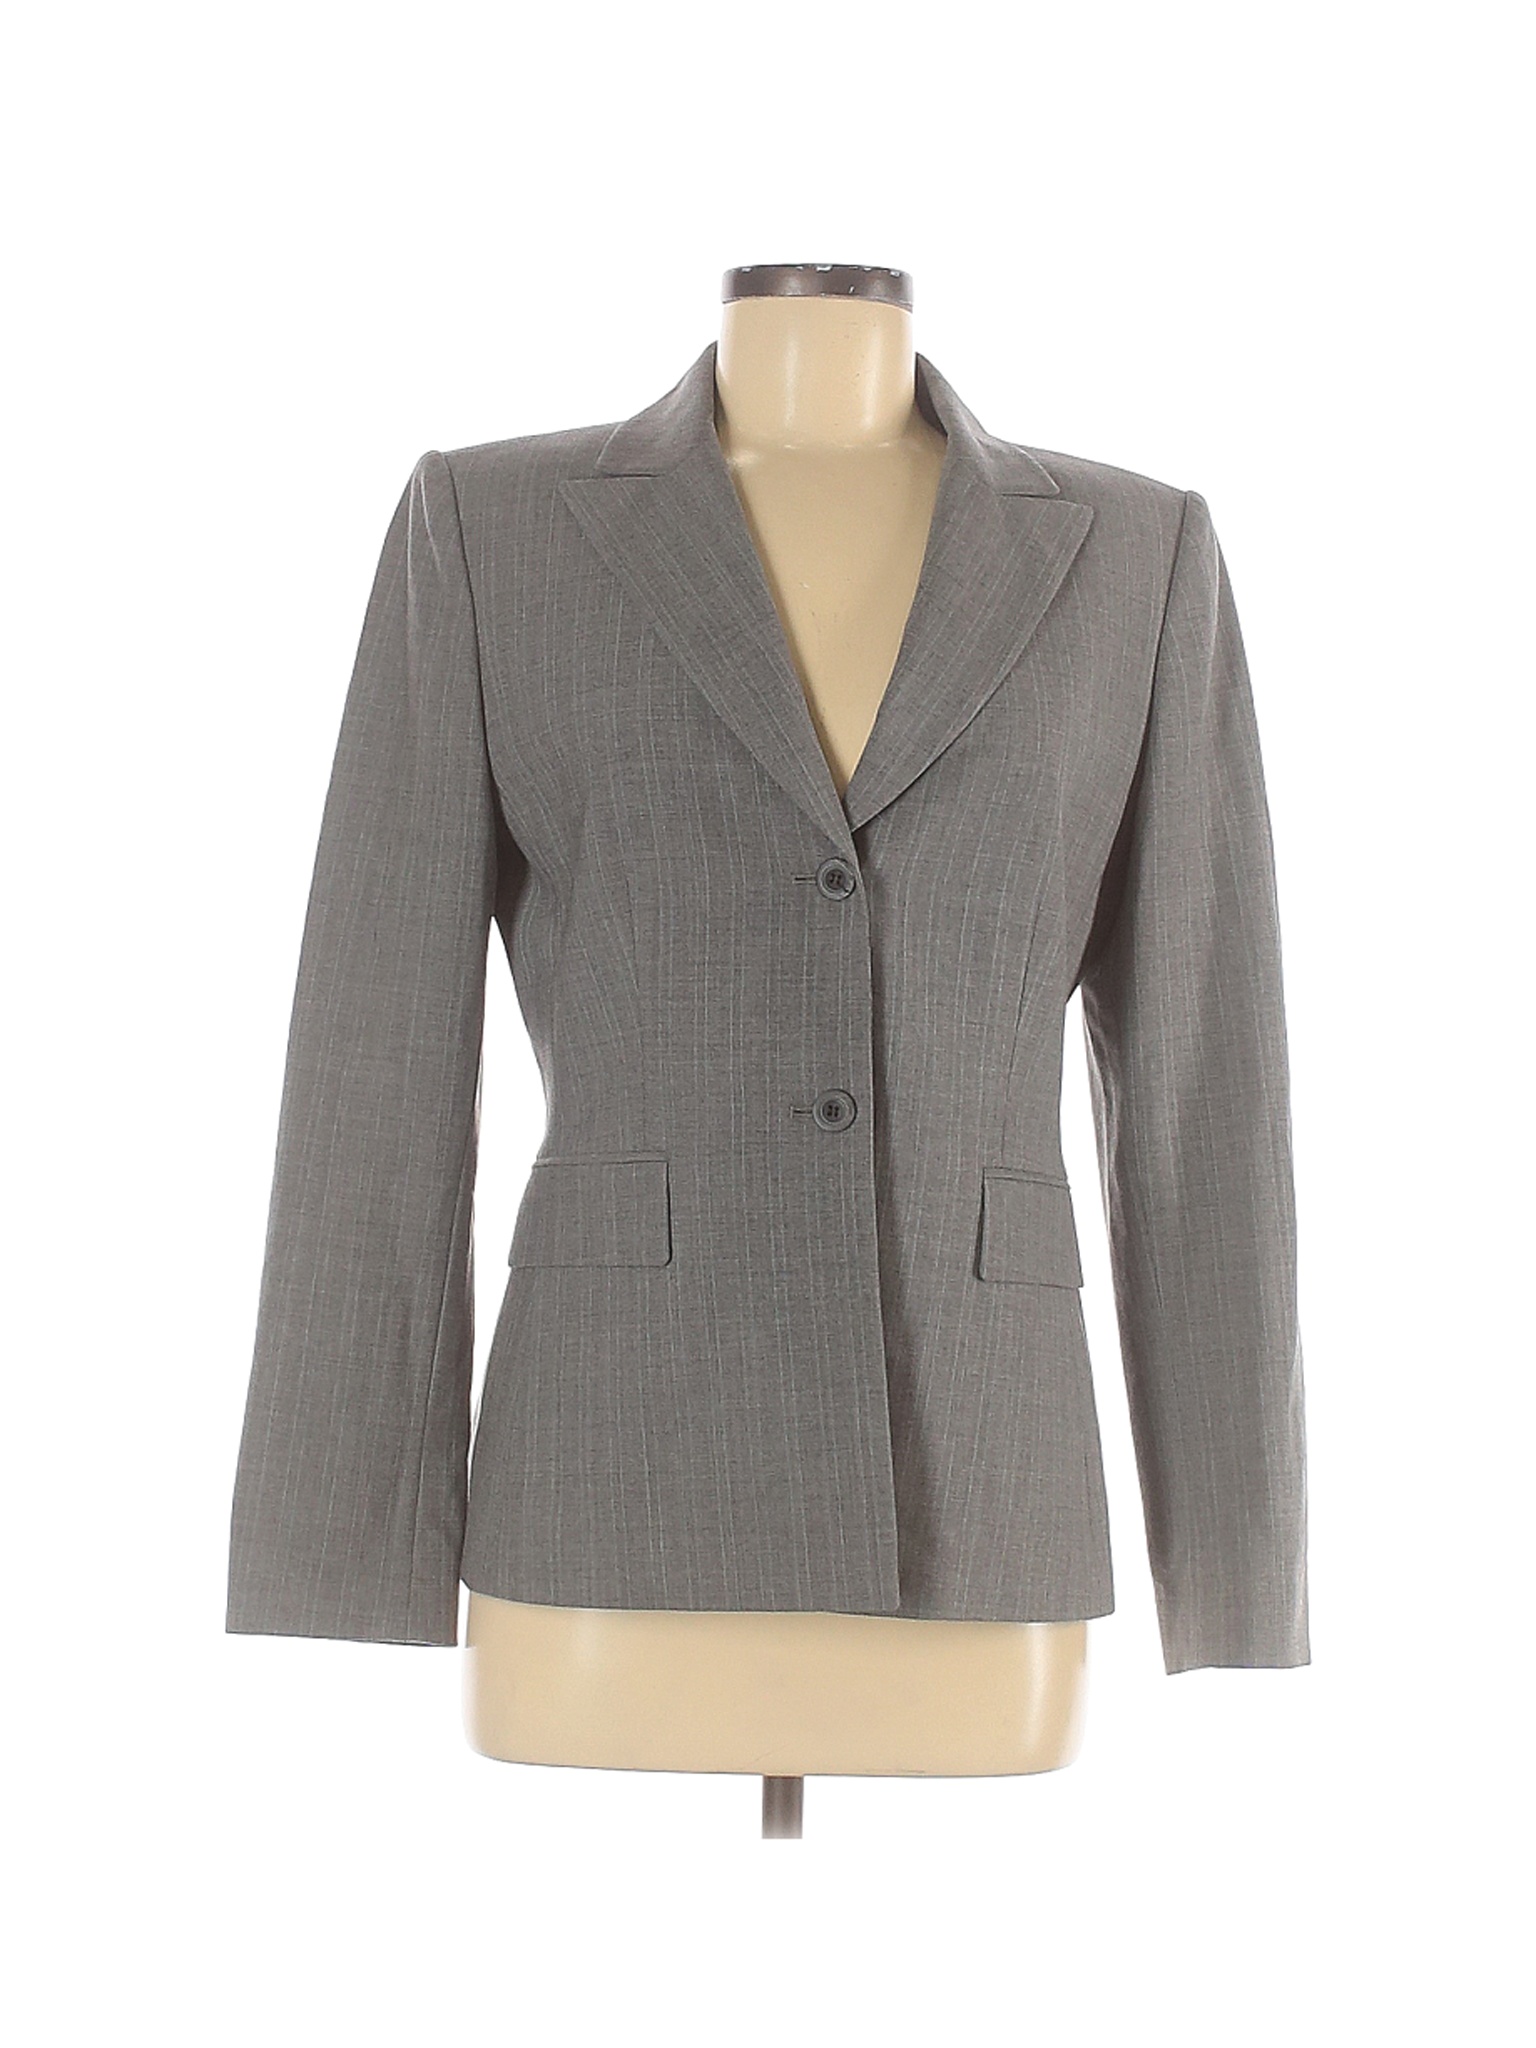 Saks Fifth Avenue Women Gray Wool Blazer 6 | eBay